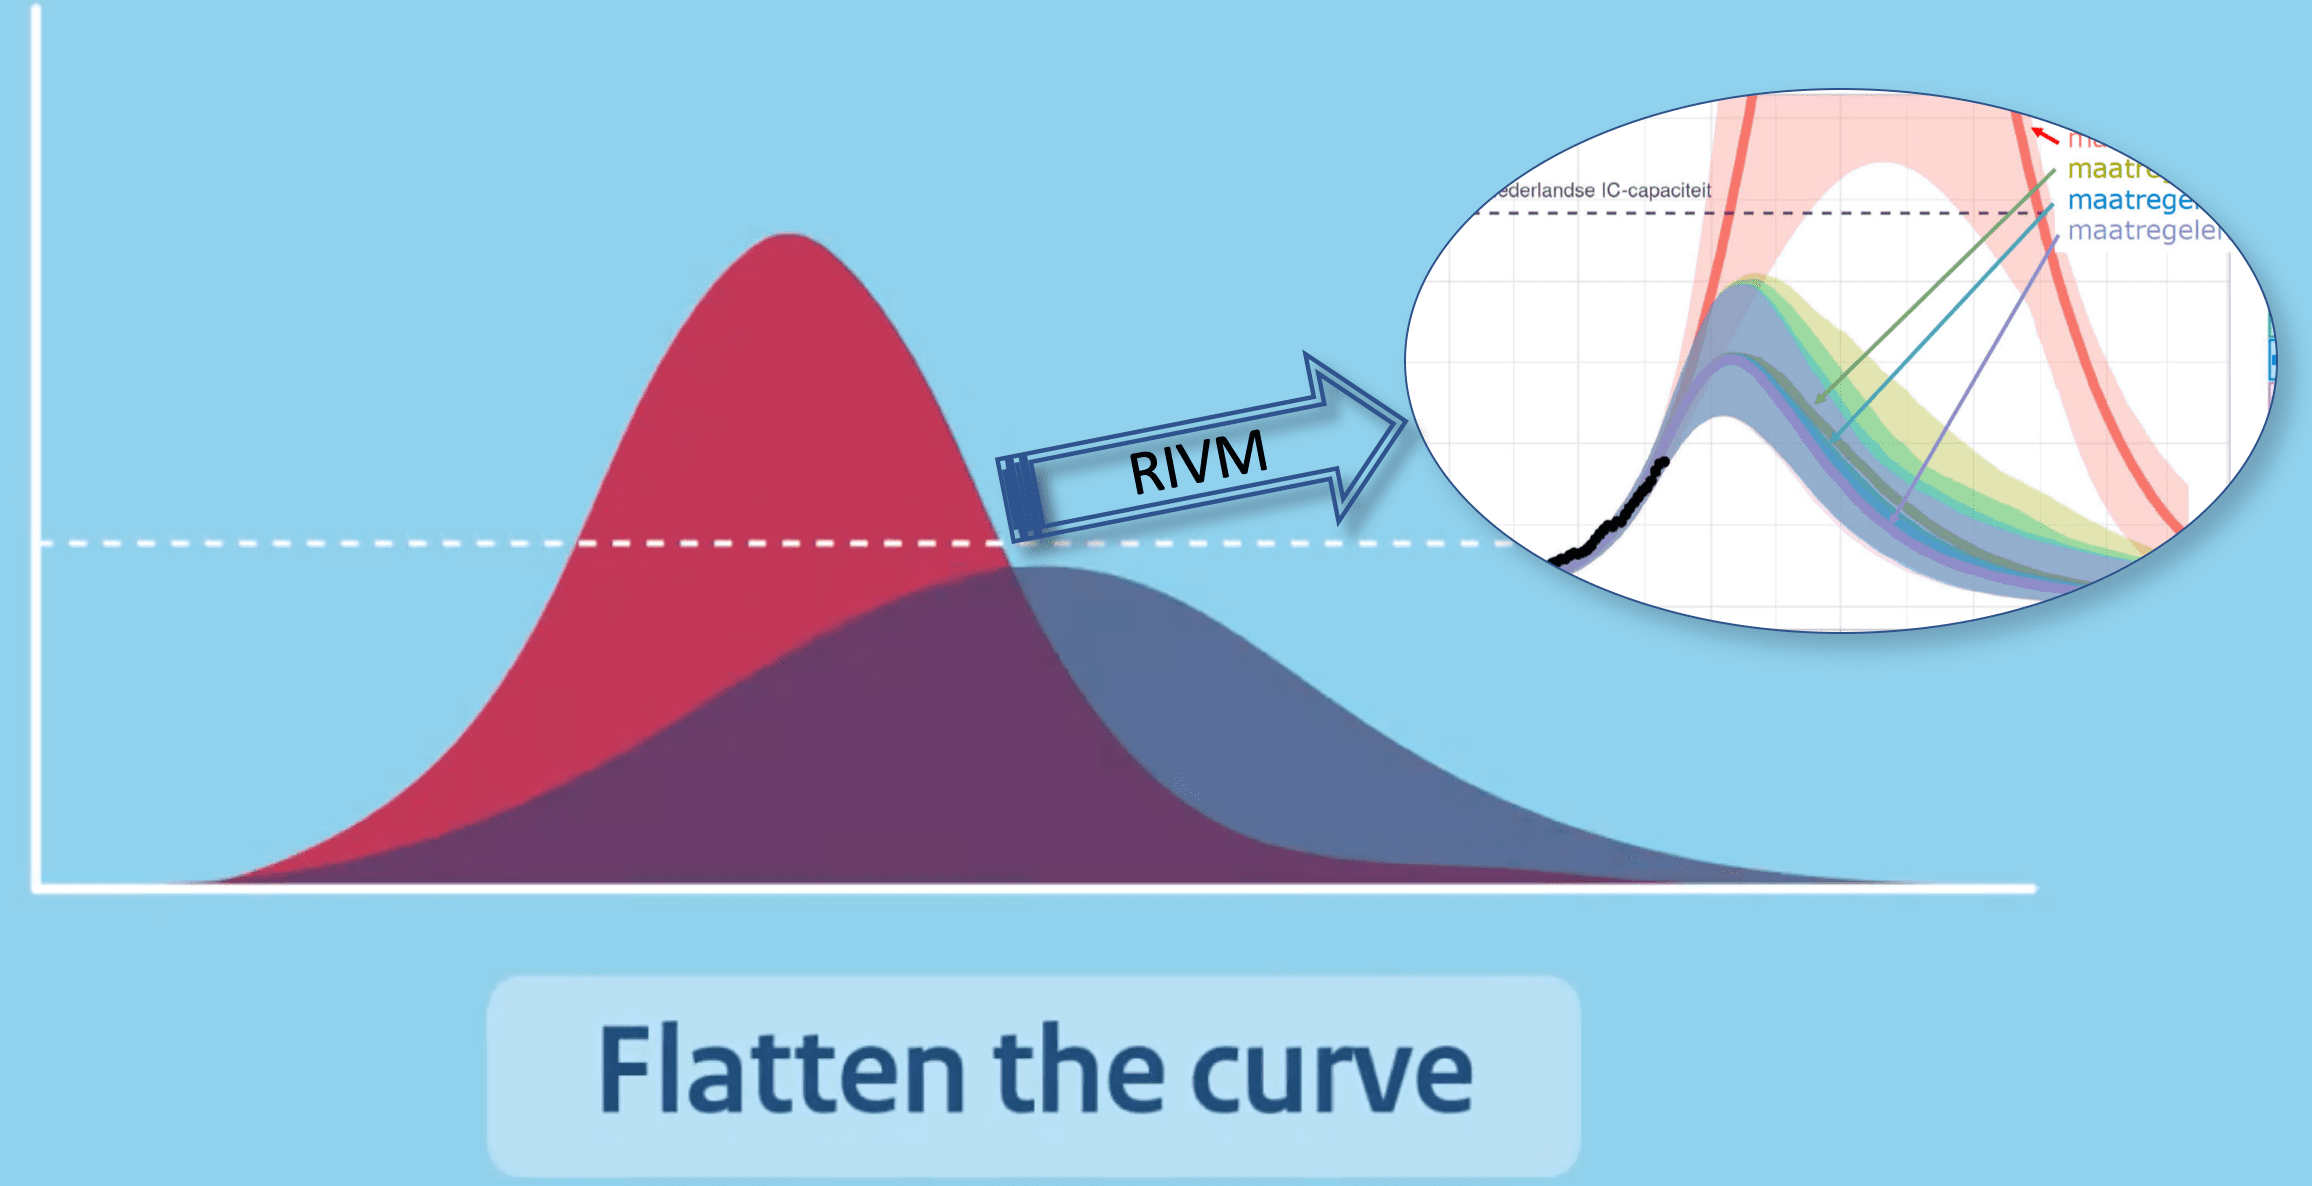 Flatten the curve RIVM